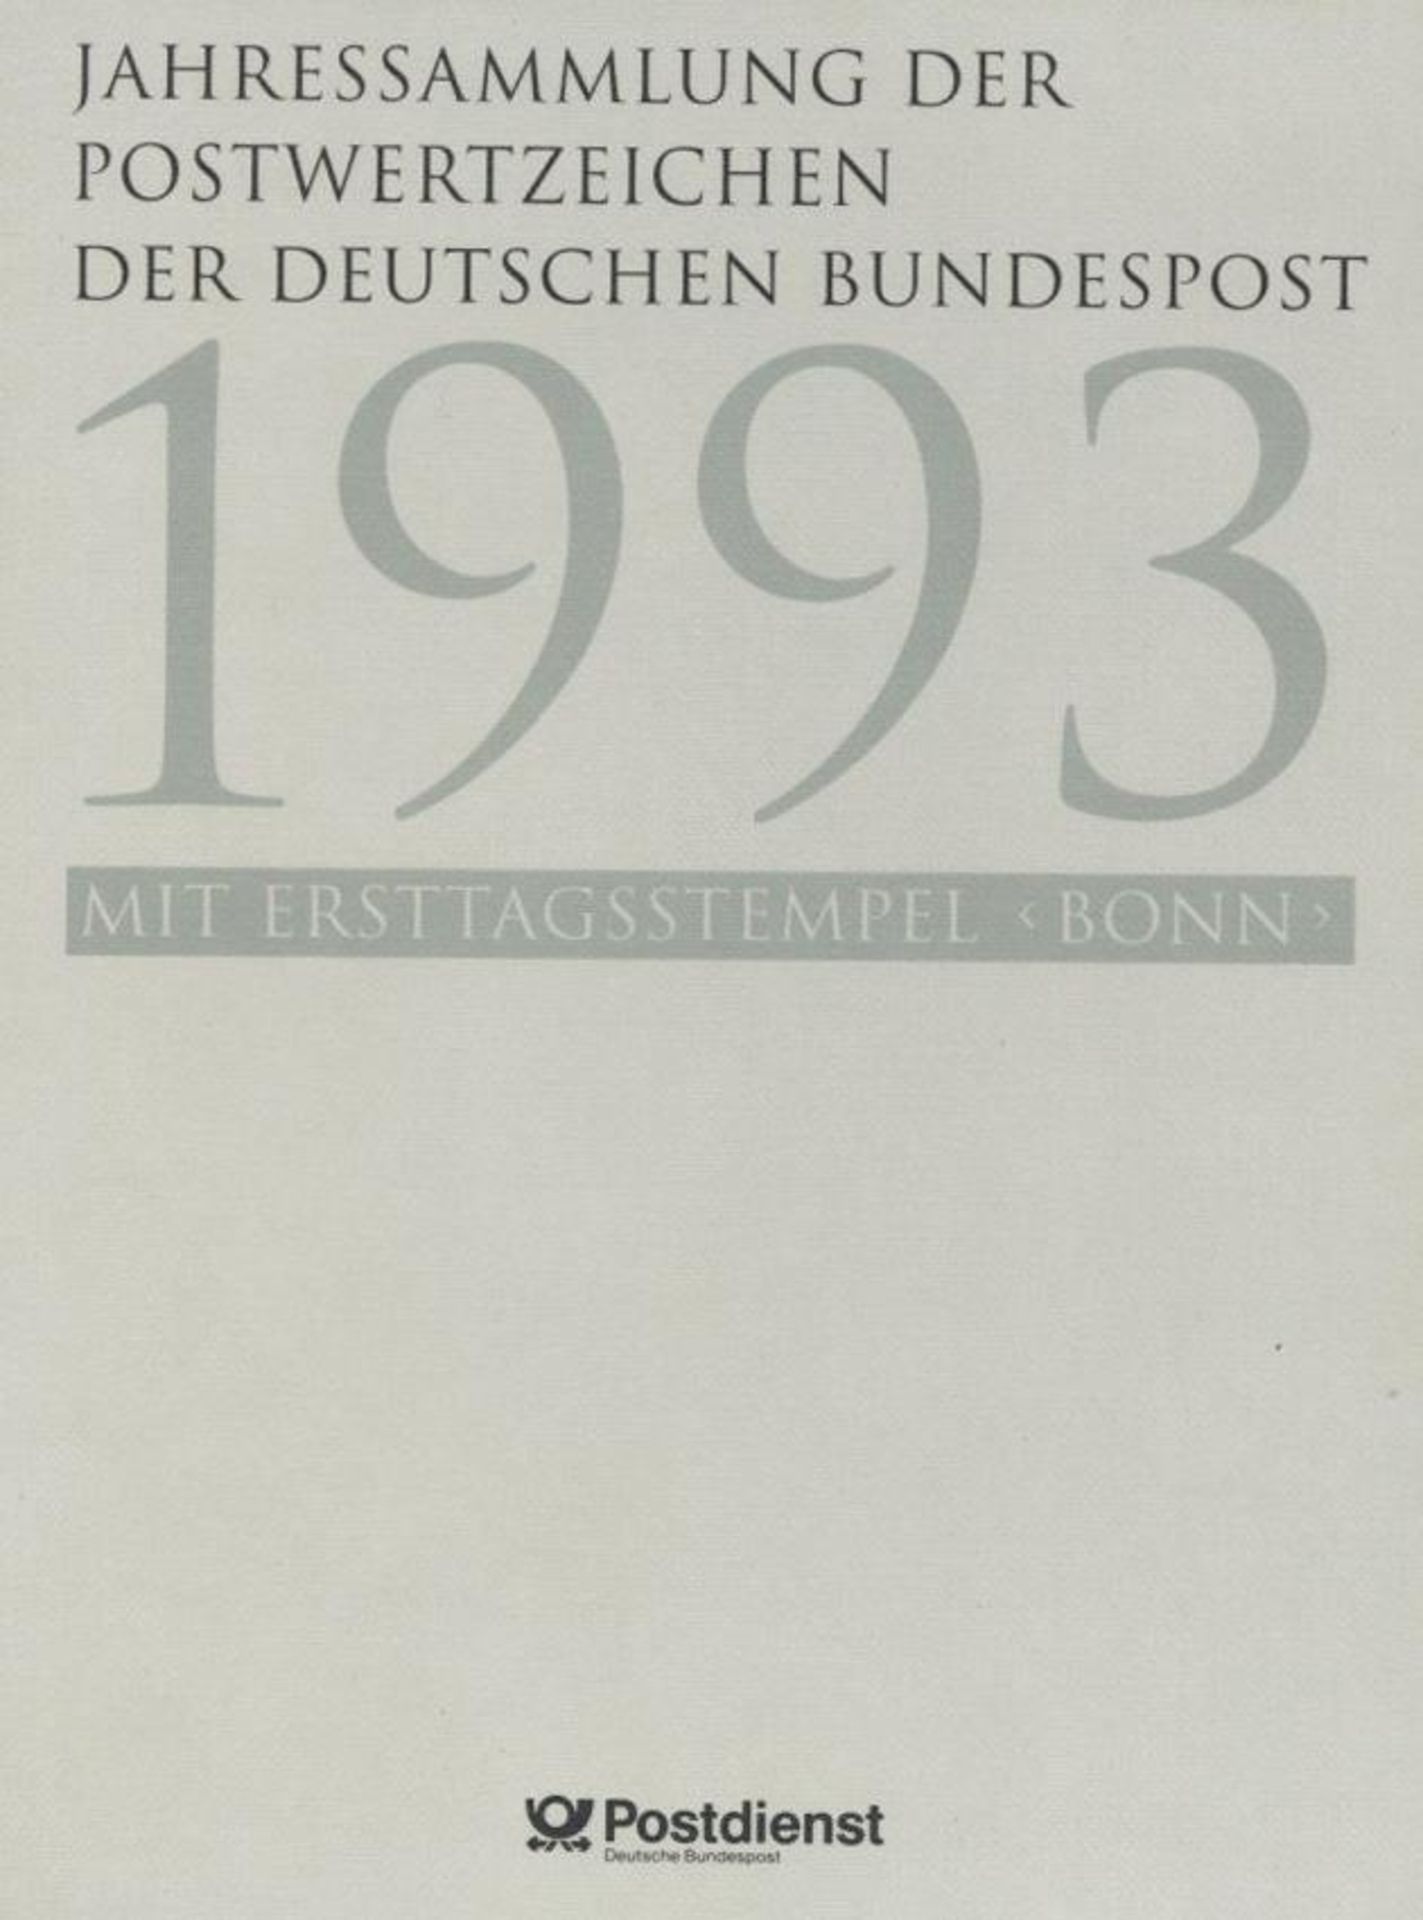 DEUTSCHLAND 1991/2005, 13 Jahressammlungen der Deutschen Bundespost bzw. der Post AG mit ESST Bonn